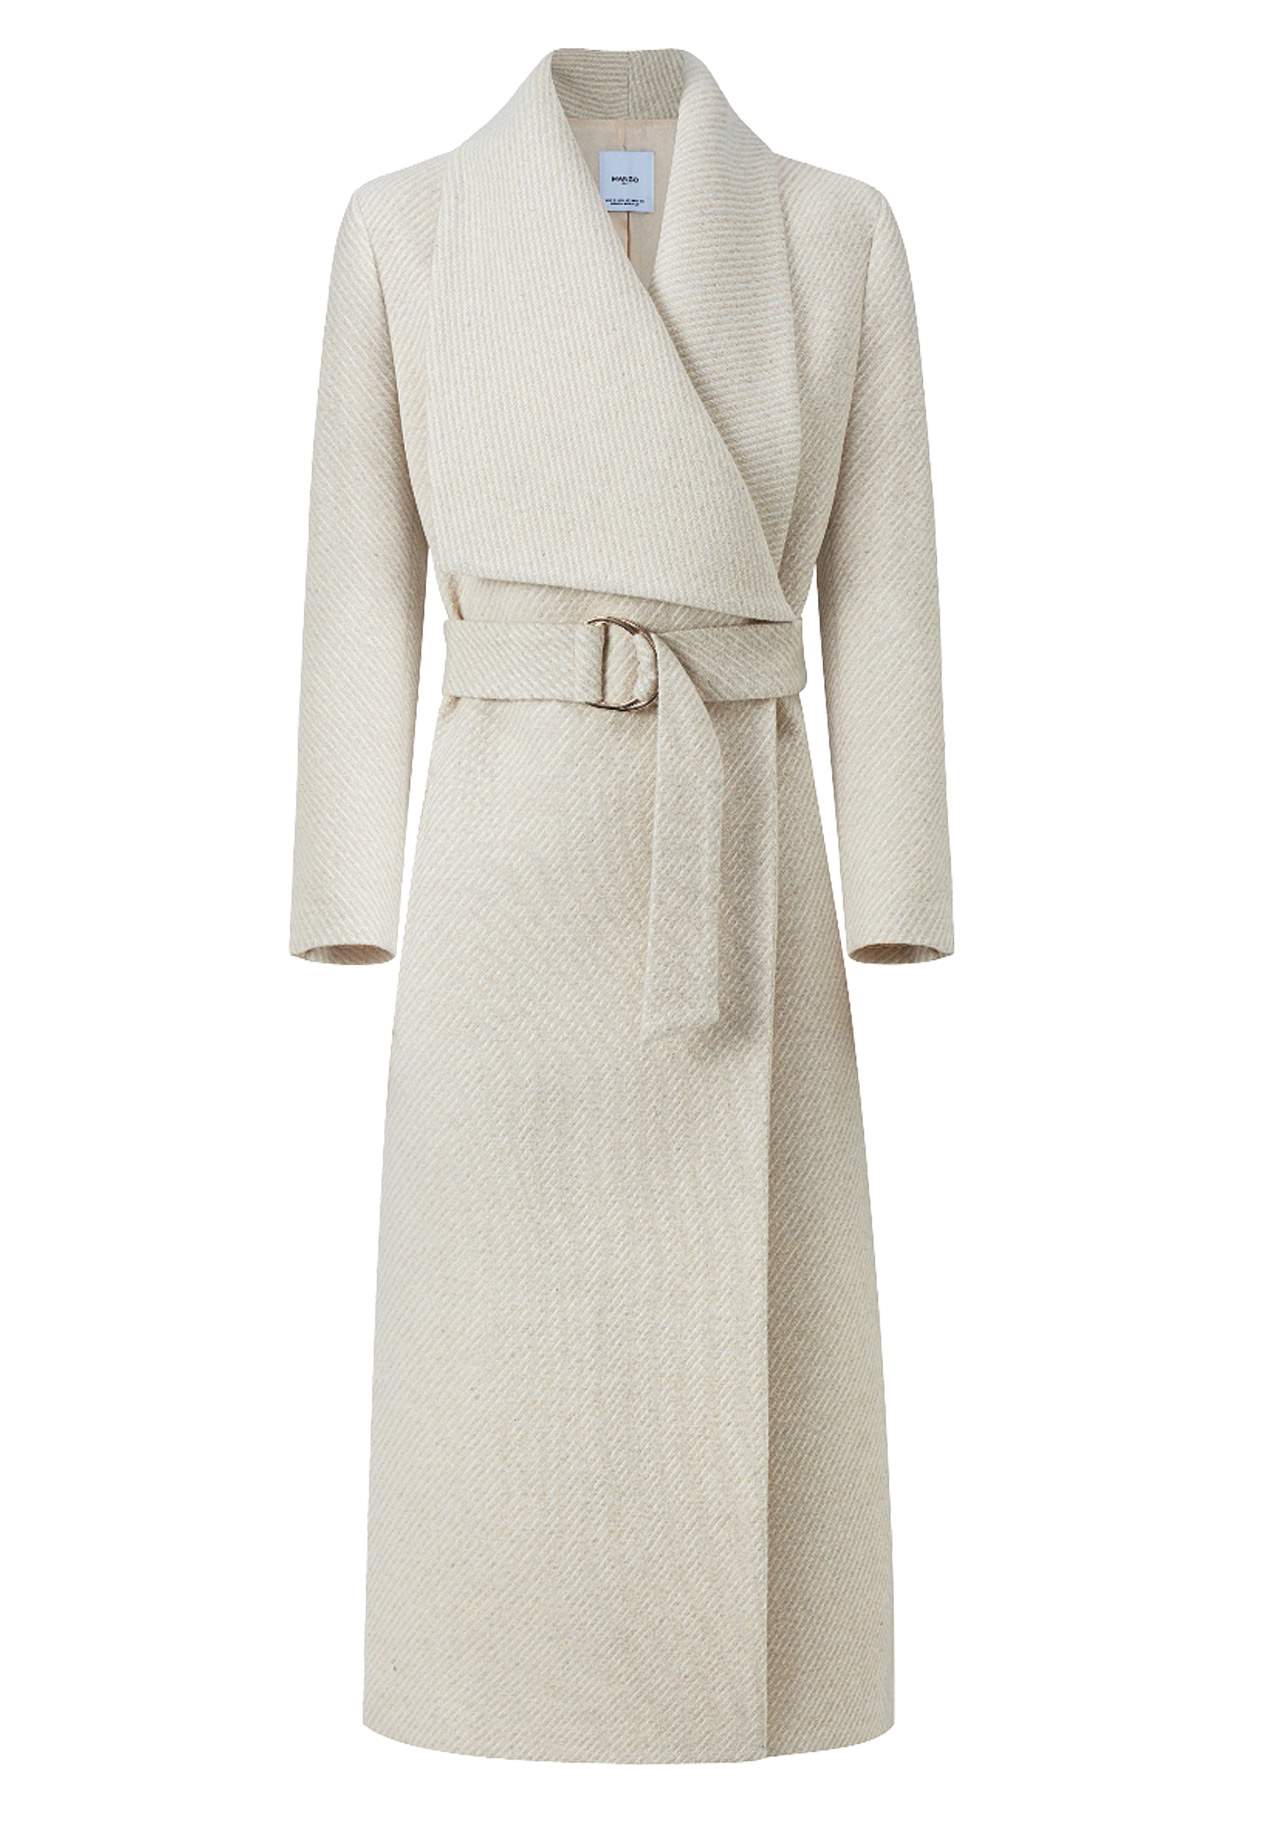 El abrigo entallado abrigos gustosos Solapa XL, de MANGO, 119,99€